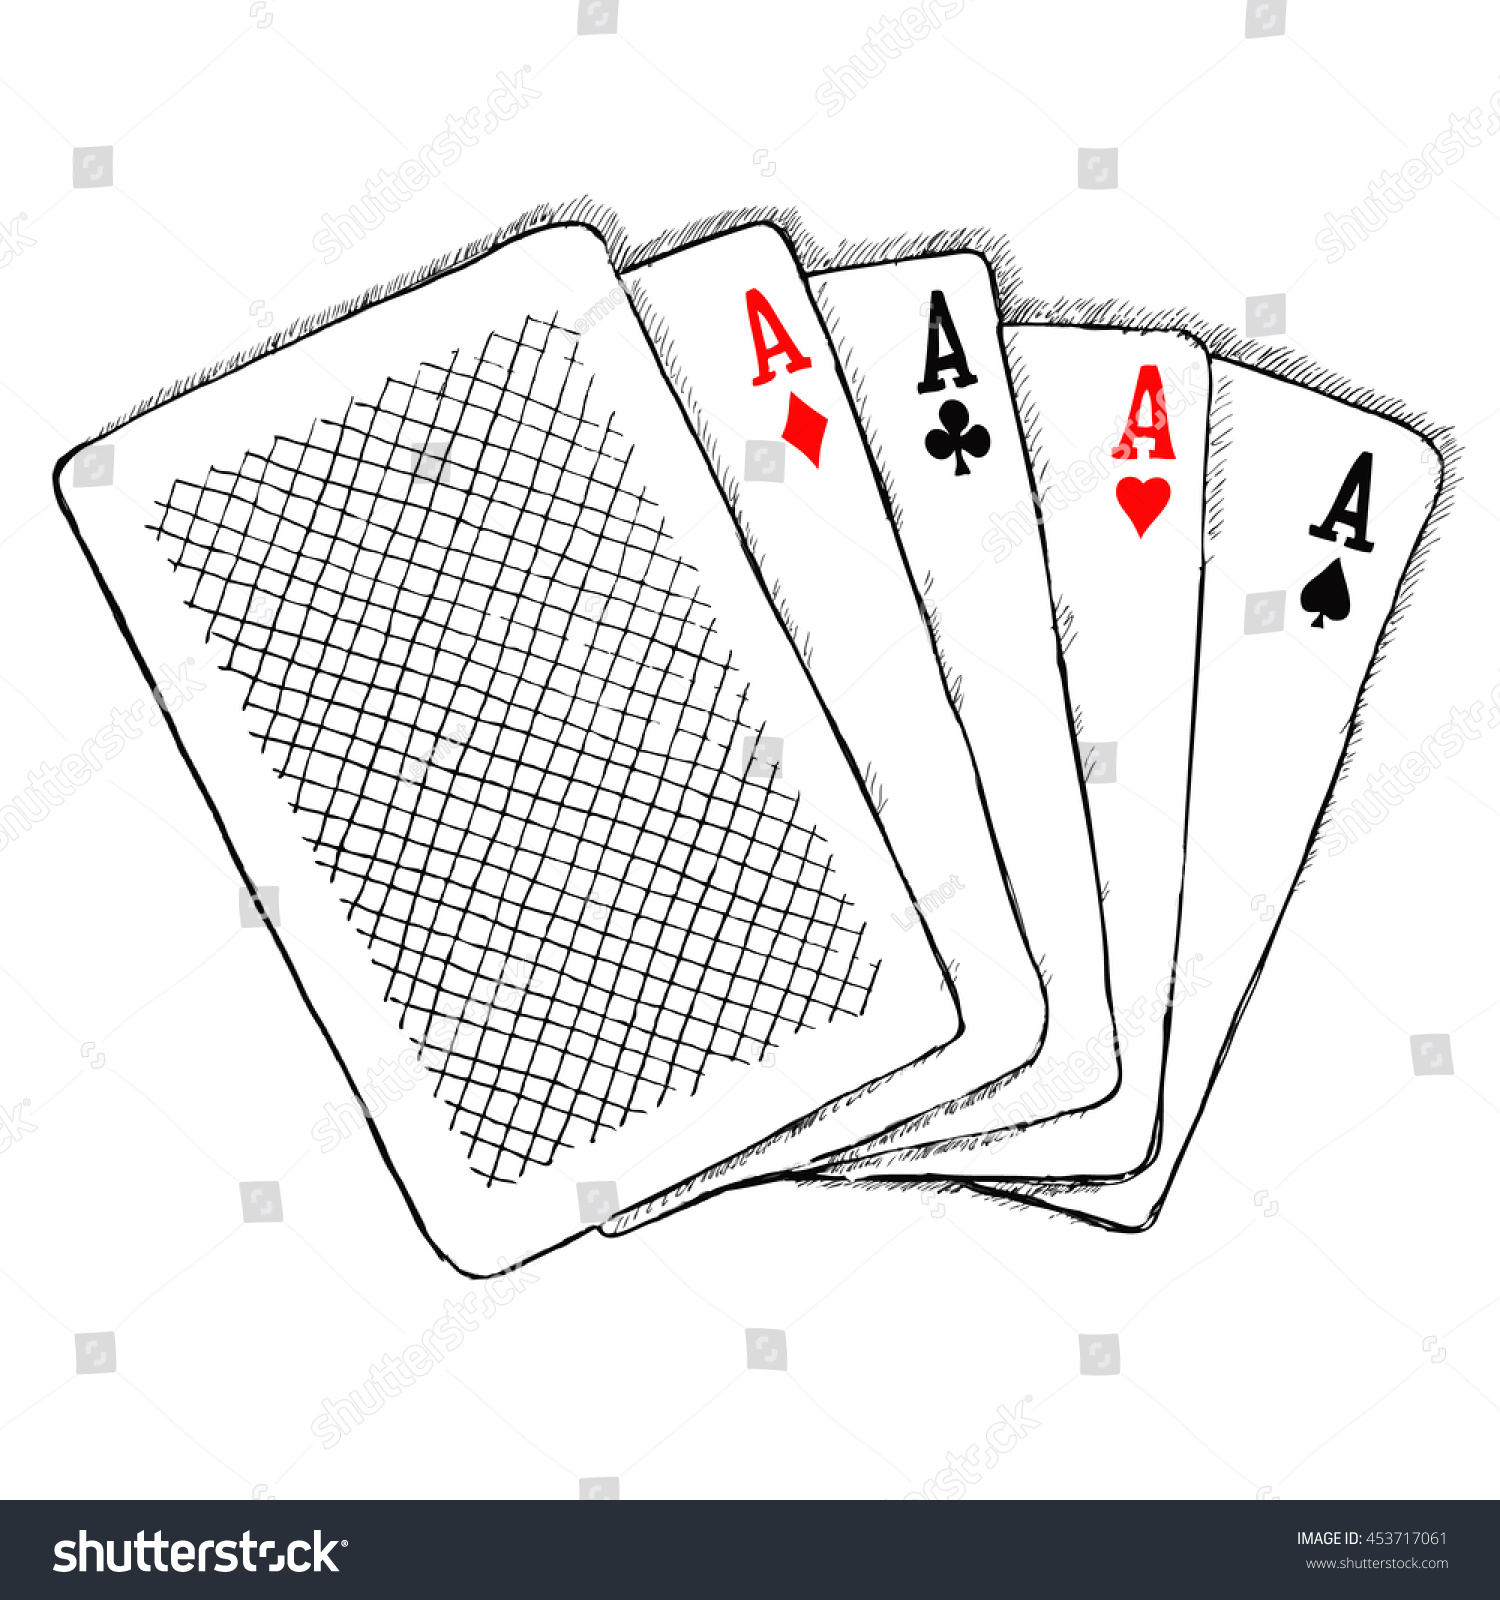 Card draw. Скетч игральные карты. Три карты скетч. Игральная карта Джокер картинки. Elite Ace карточка.